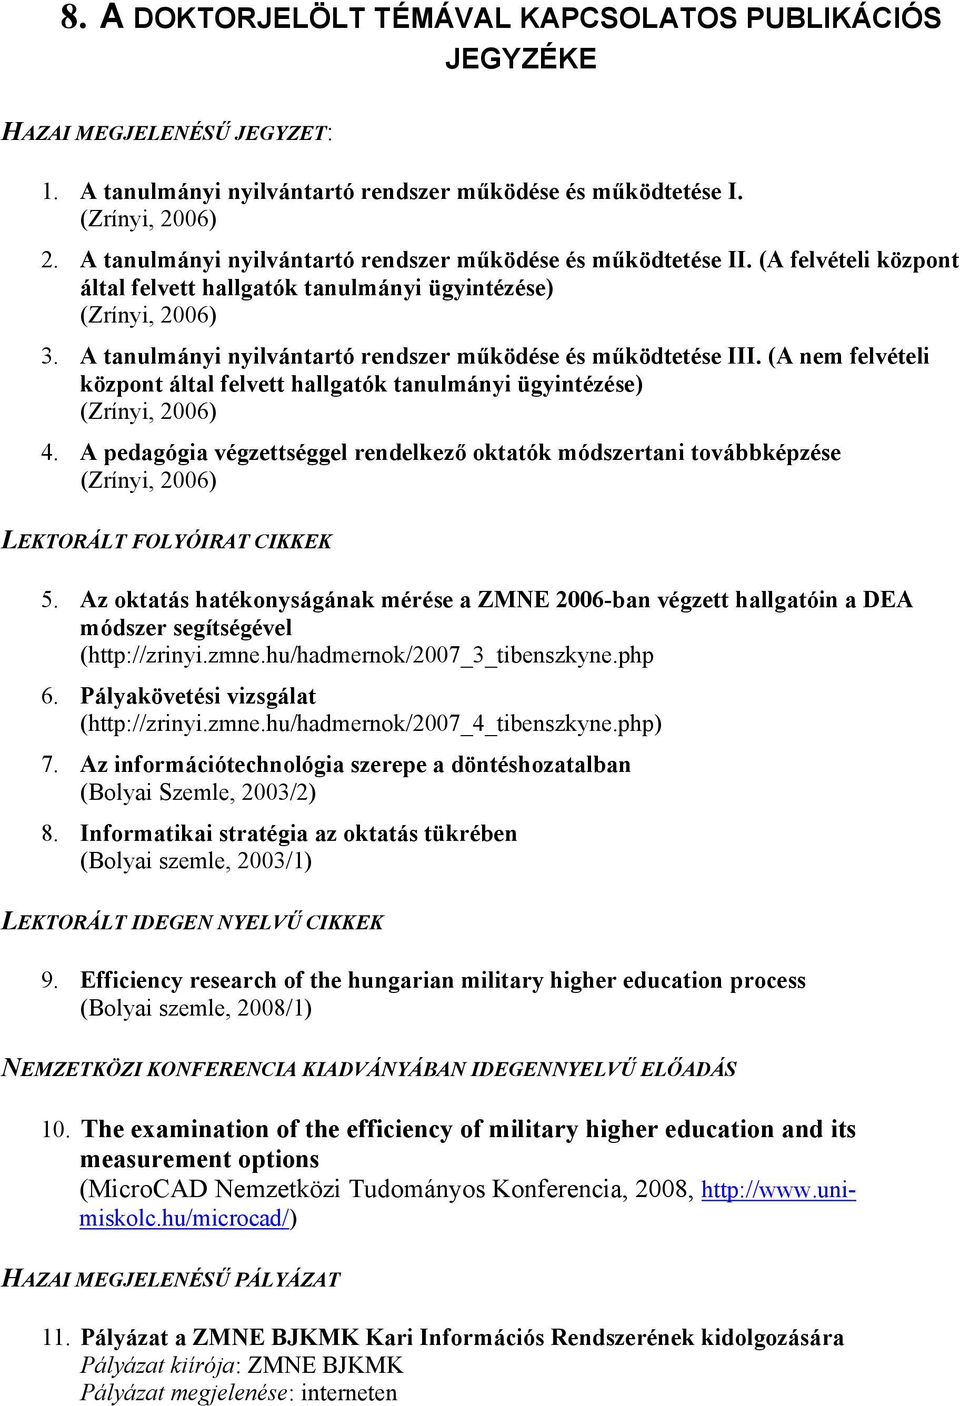 A tanulmányi nyilvántartó rendszer működése és működtetése III. (A nem felvételi központ által felvett hallgatók tanulmányi ügyintézése) (Zrínyi, 2006) 4.